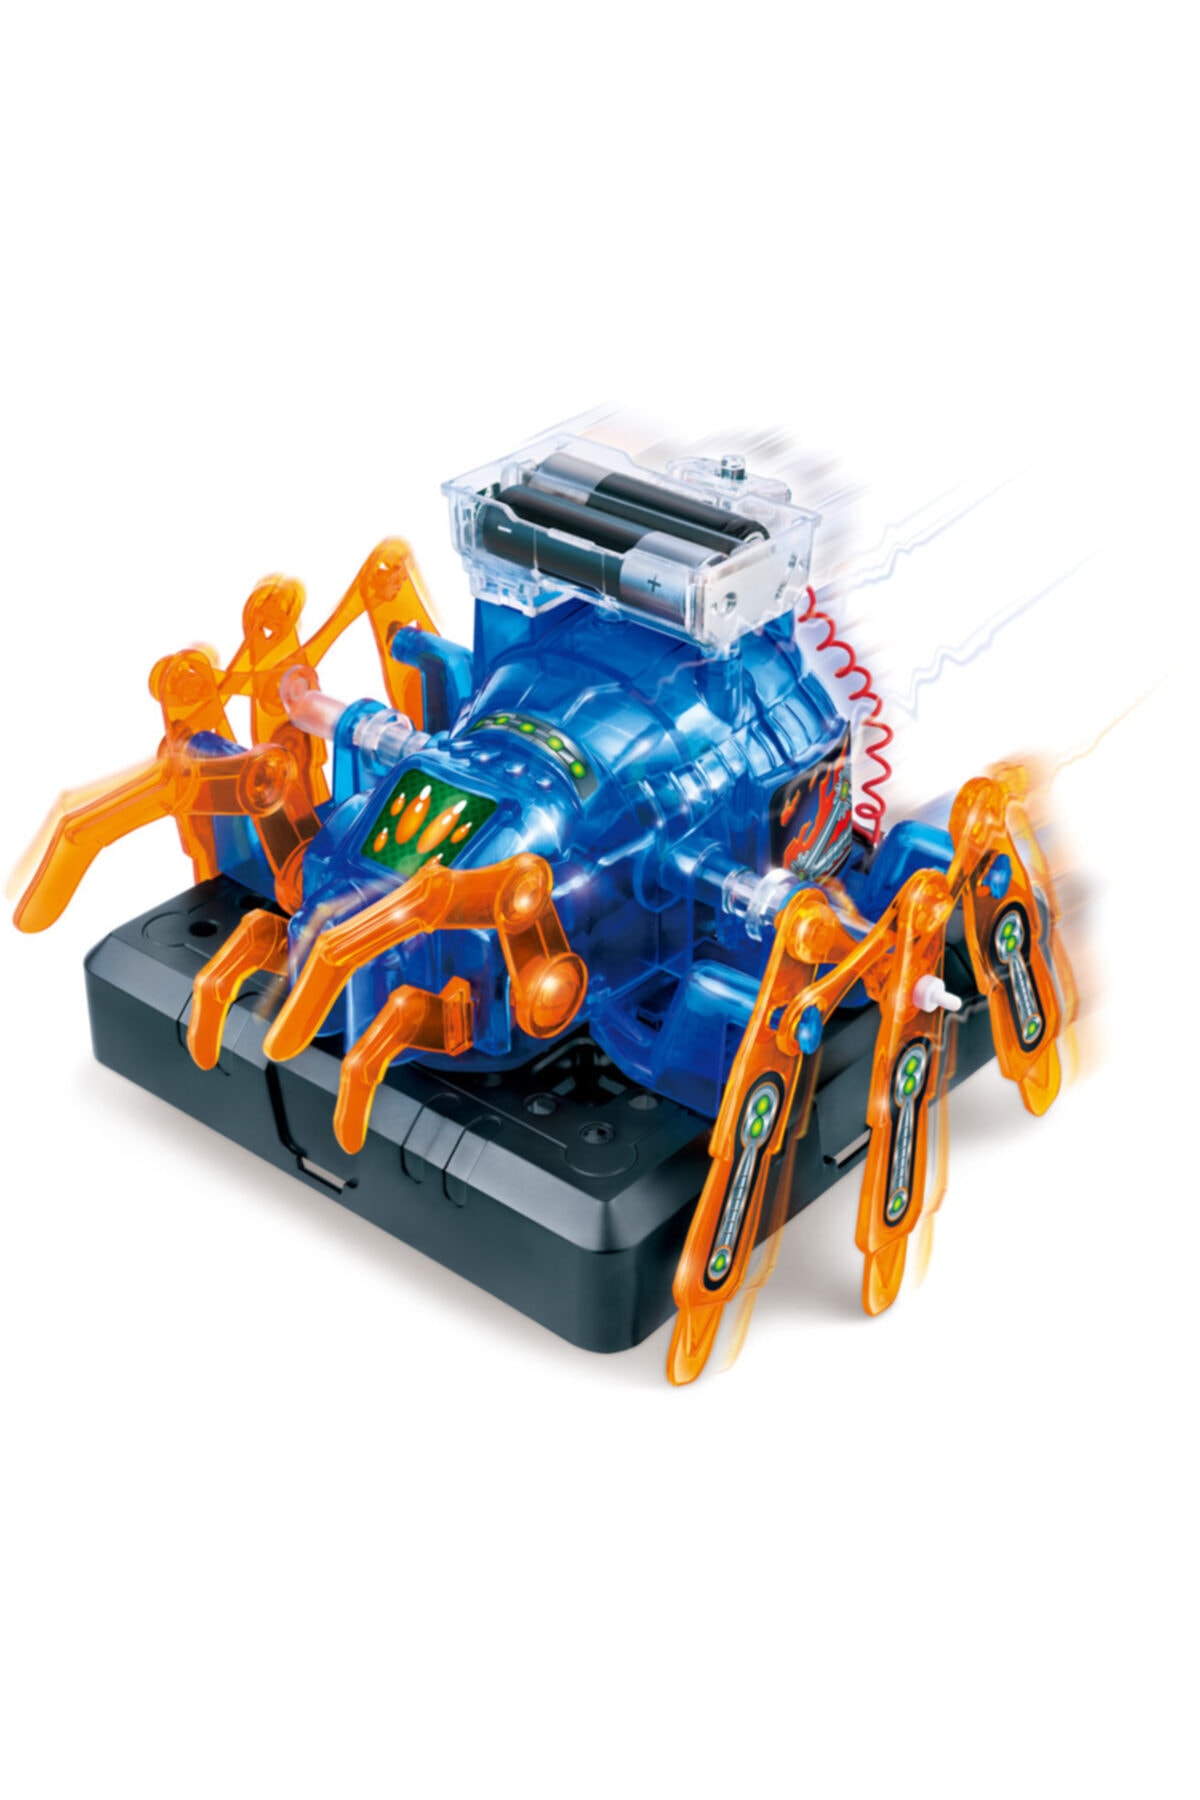 Amazing Toys Eğitici Oyuncak Connex Robotik Örümcek - Bilimsel Eğitim Seti